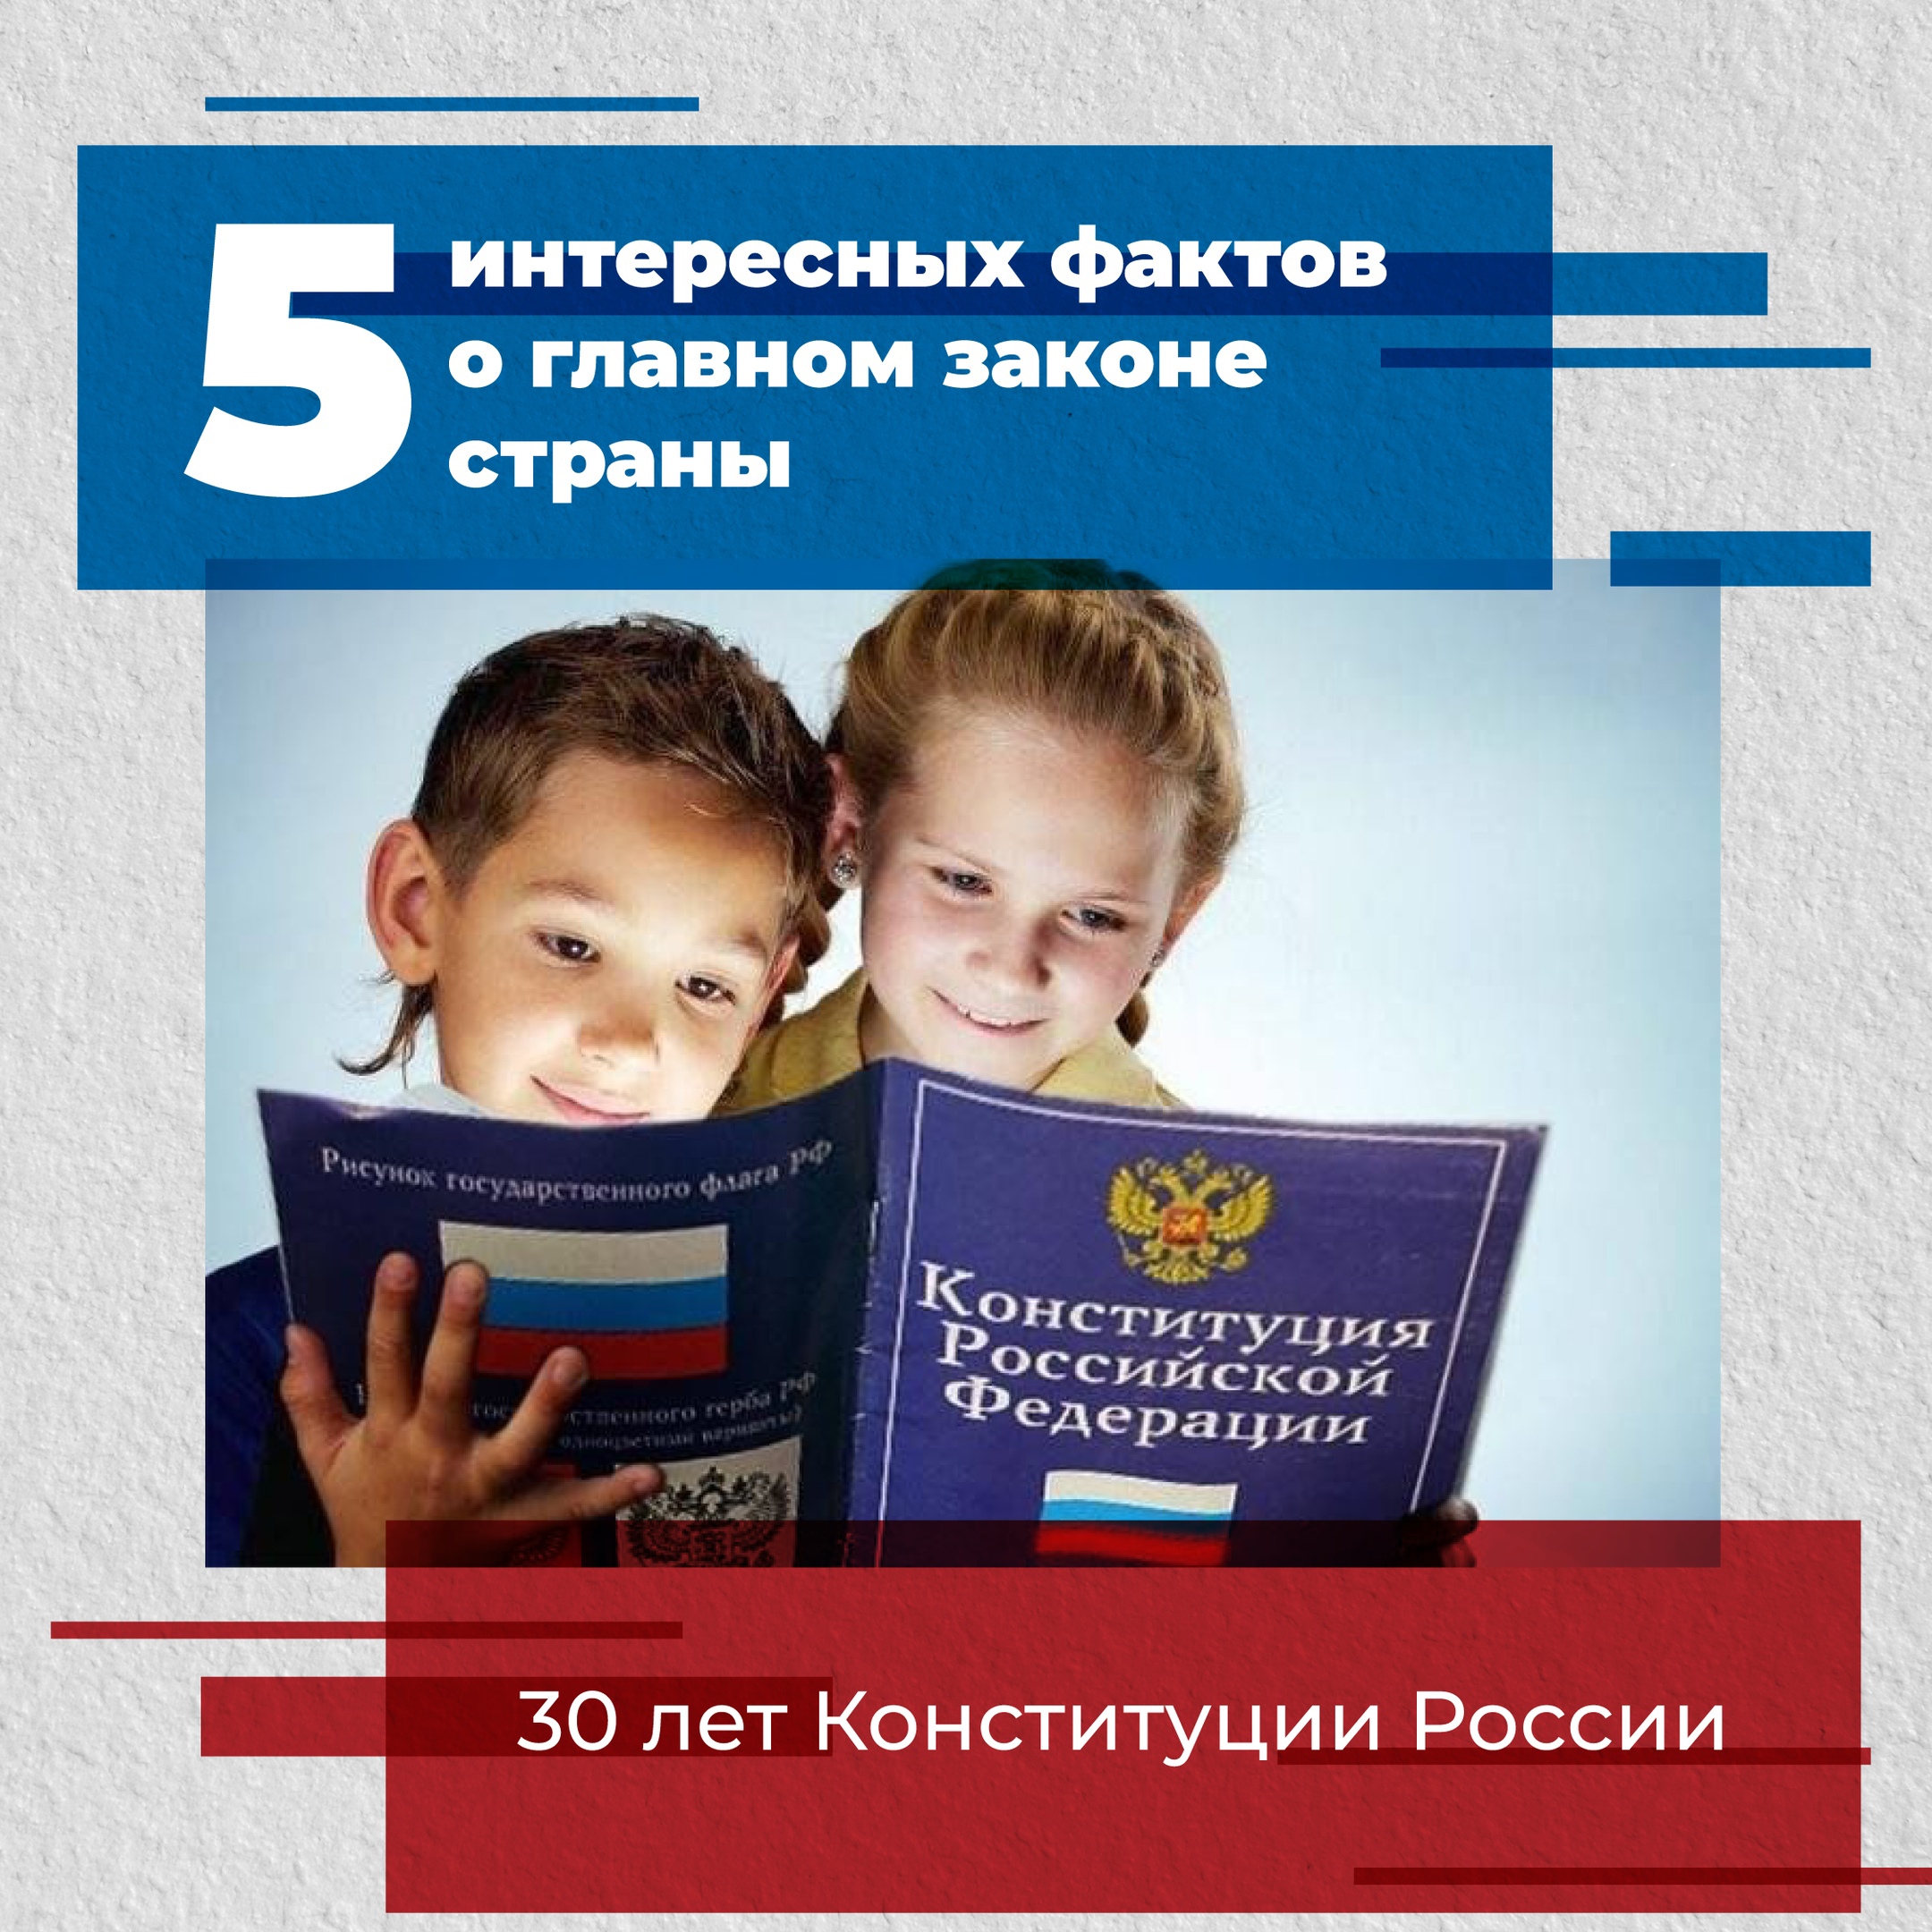 12 декабря —День Конституции Российской Федерации..